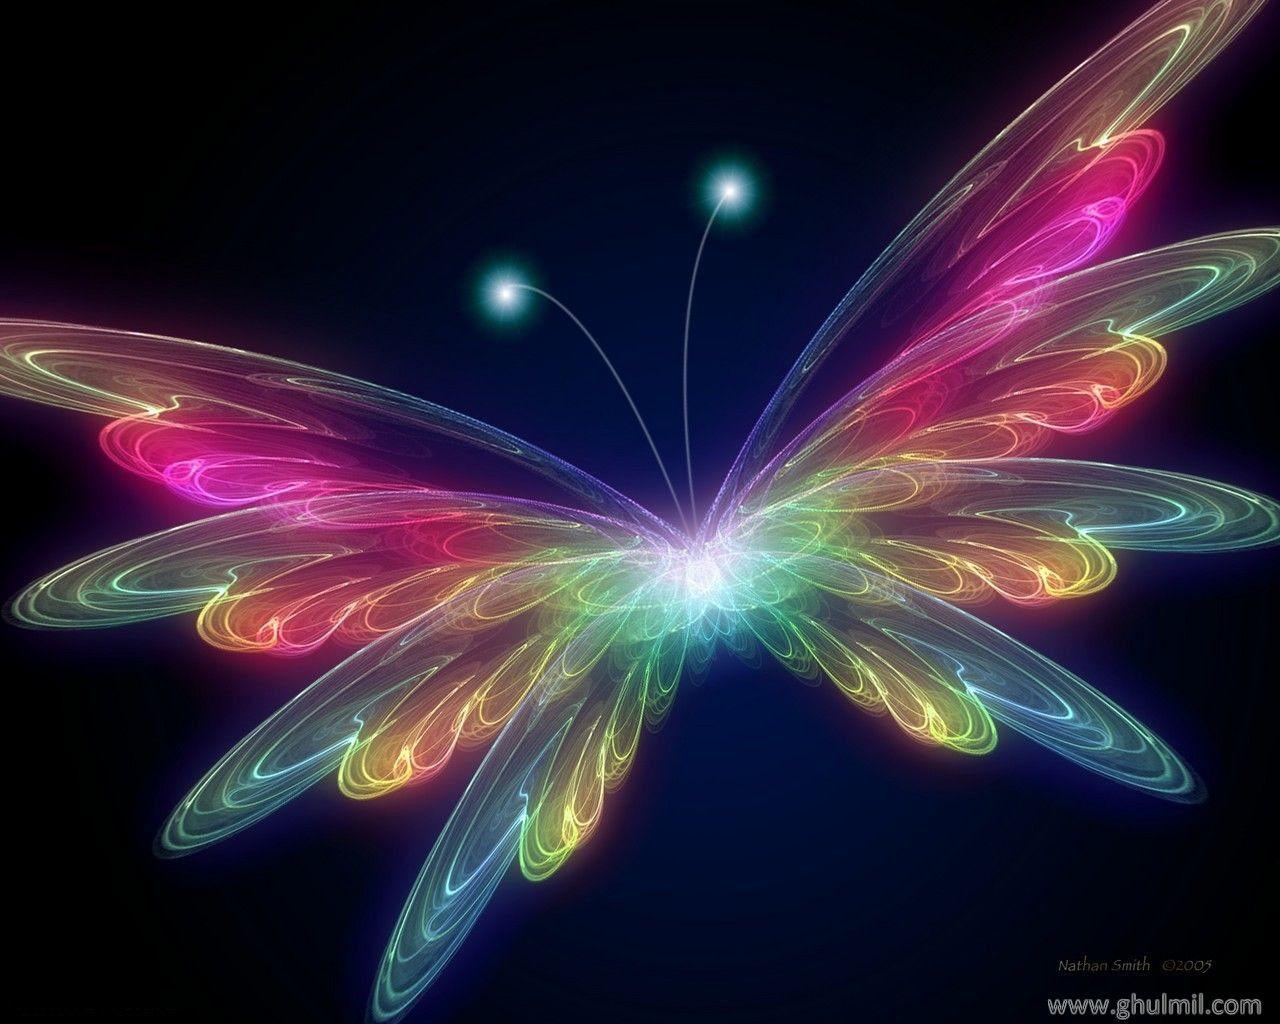 Free 3D Wallpaper Download: Butterfly wallpaper, butterfly